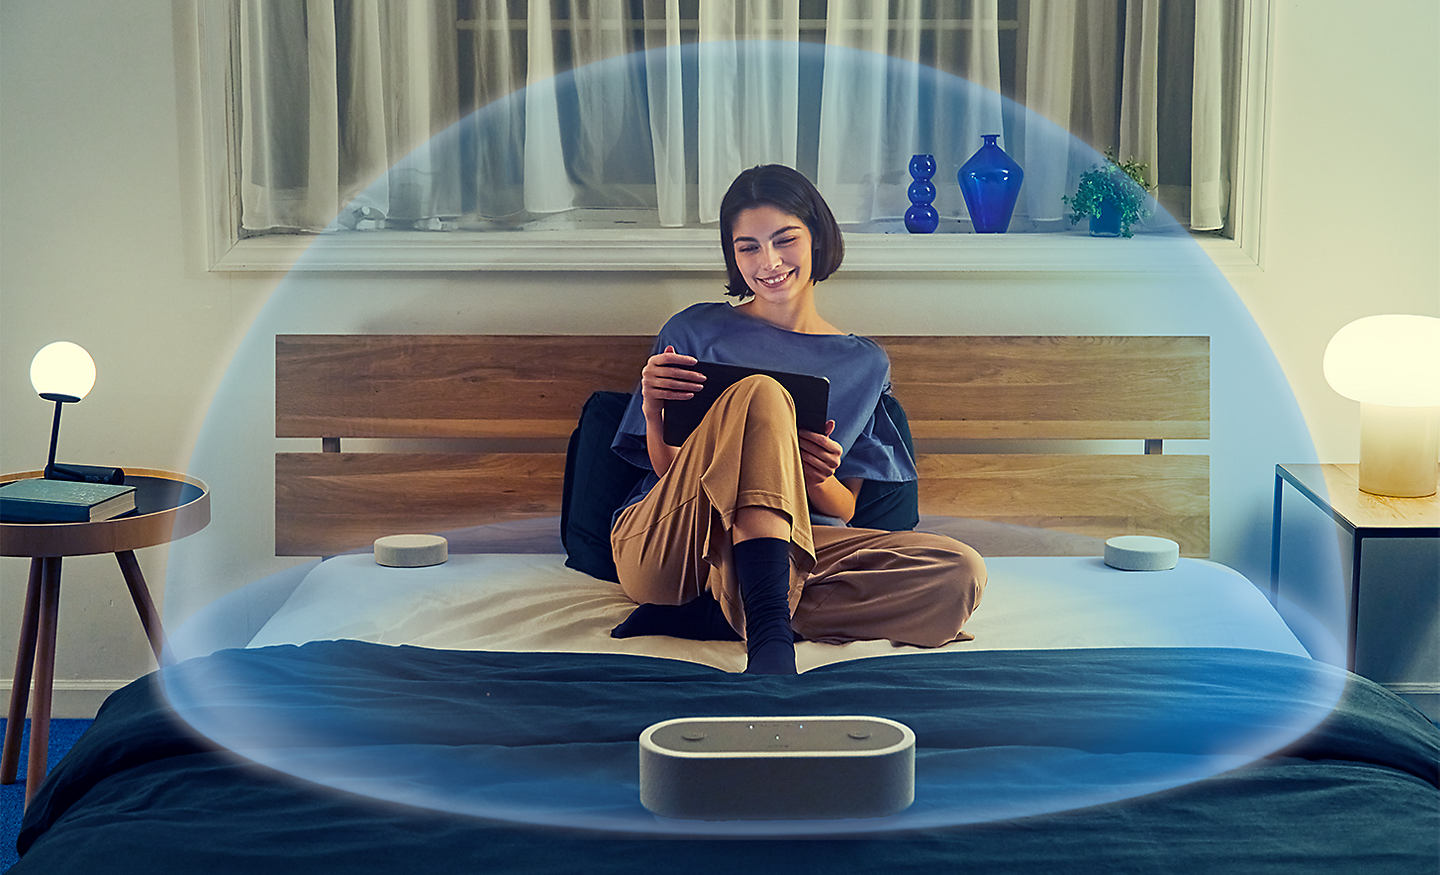 Abbildung einer auf einem Bett sitzenden Person, die vom HT-AX7 umgeben ist, und eine durchscheinende Blase, die sie mit räumlichen Klang einschließt